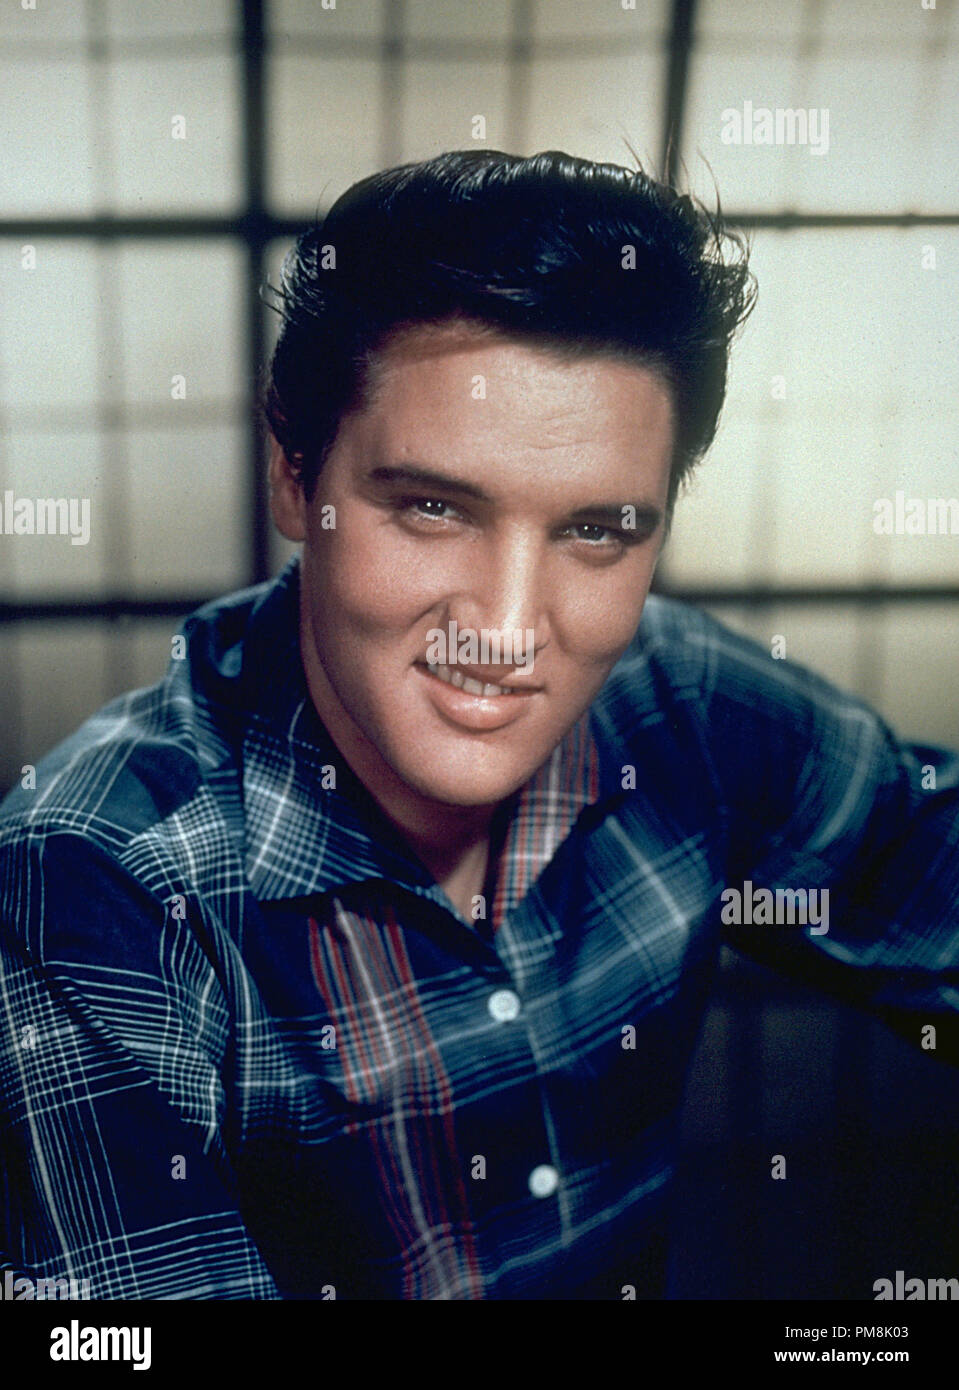 (Archivística Cine Clásico - Elvis Presley retrospectiva) Elvis Presley, circa 1958 Archivo de referencia # 31616 076tha Foto de stock